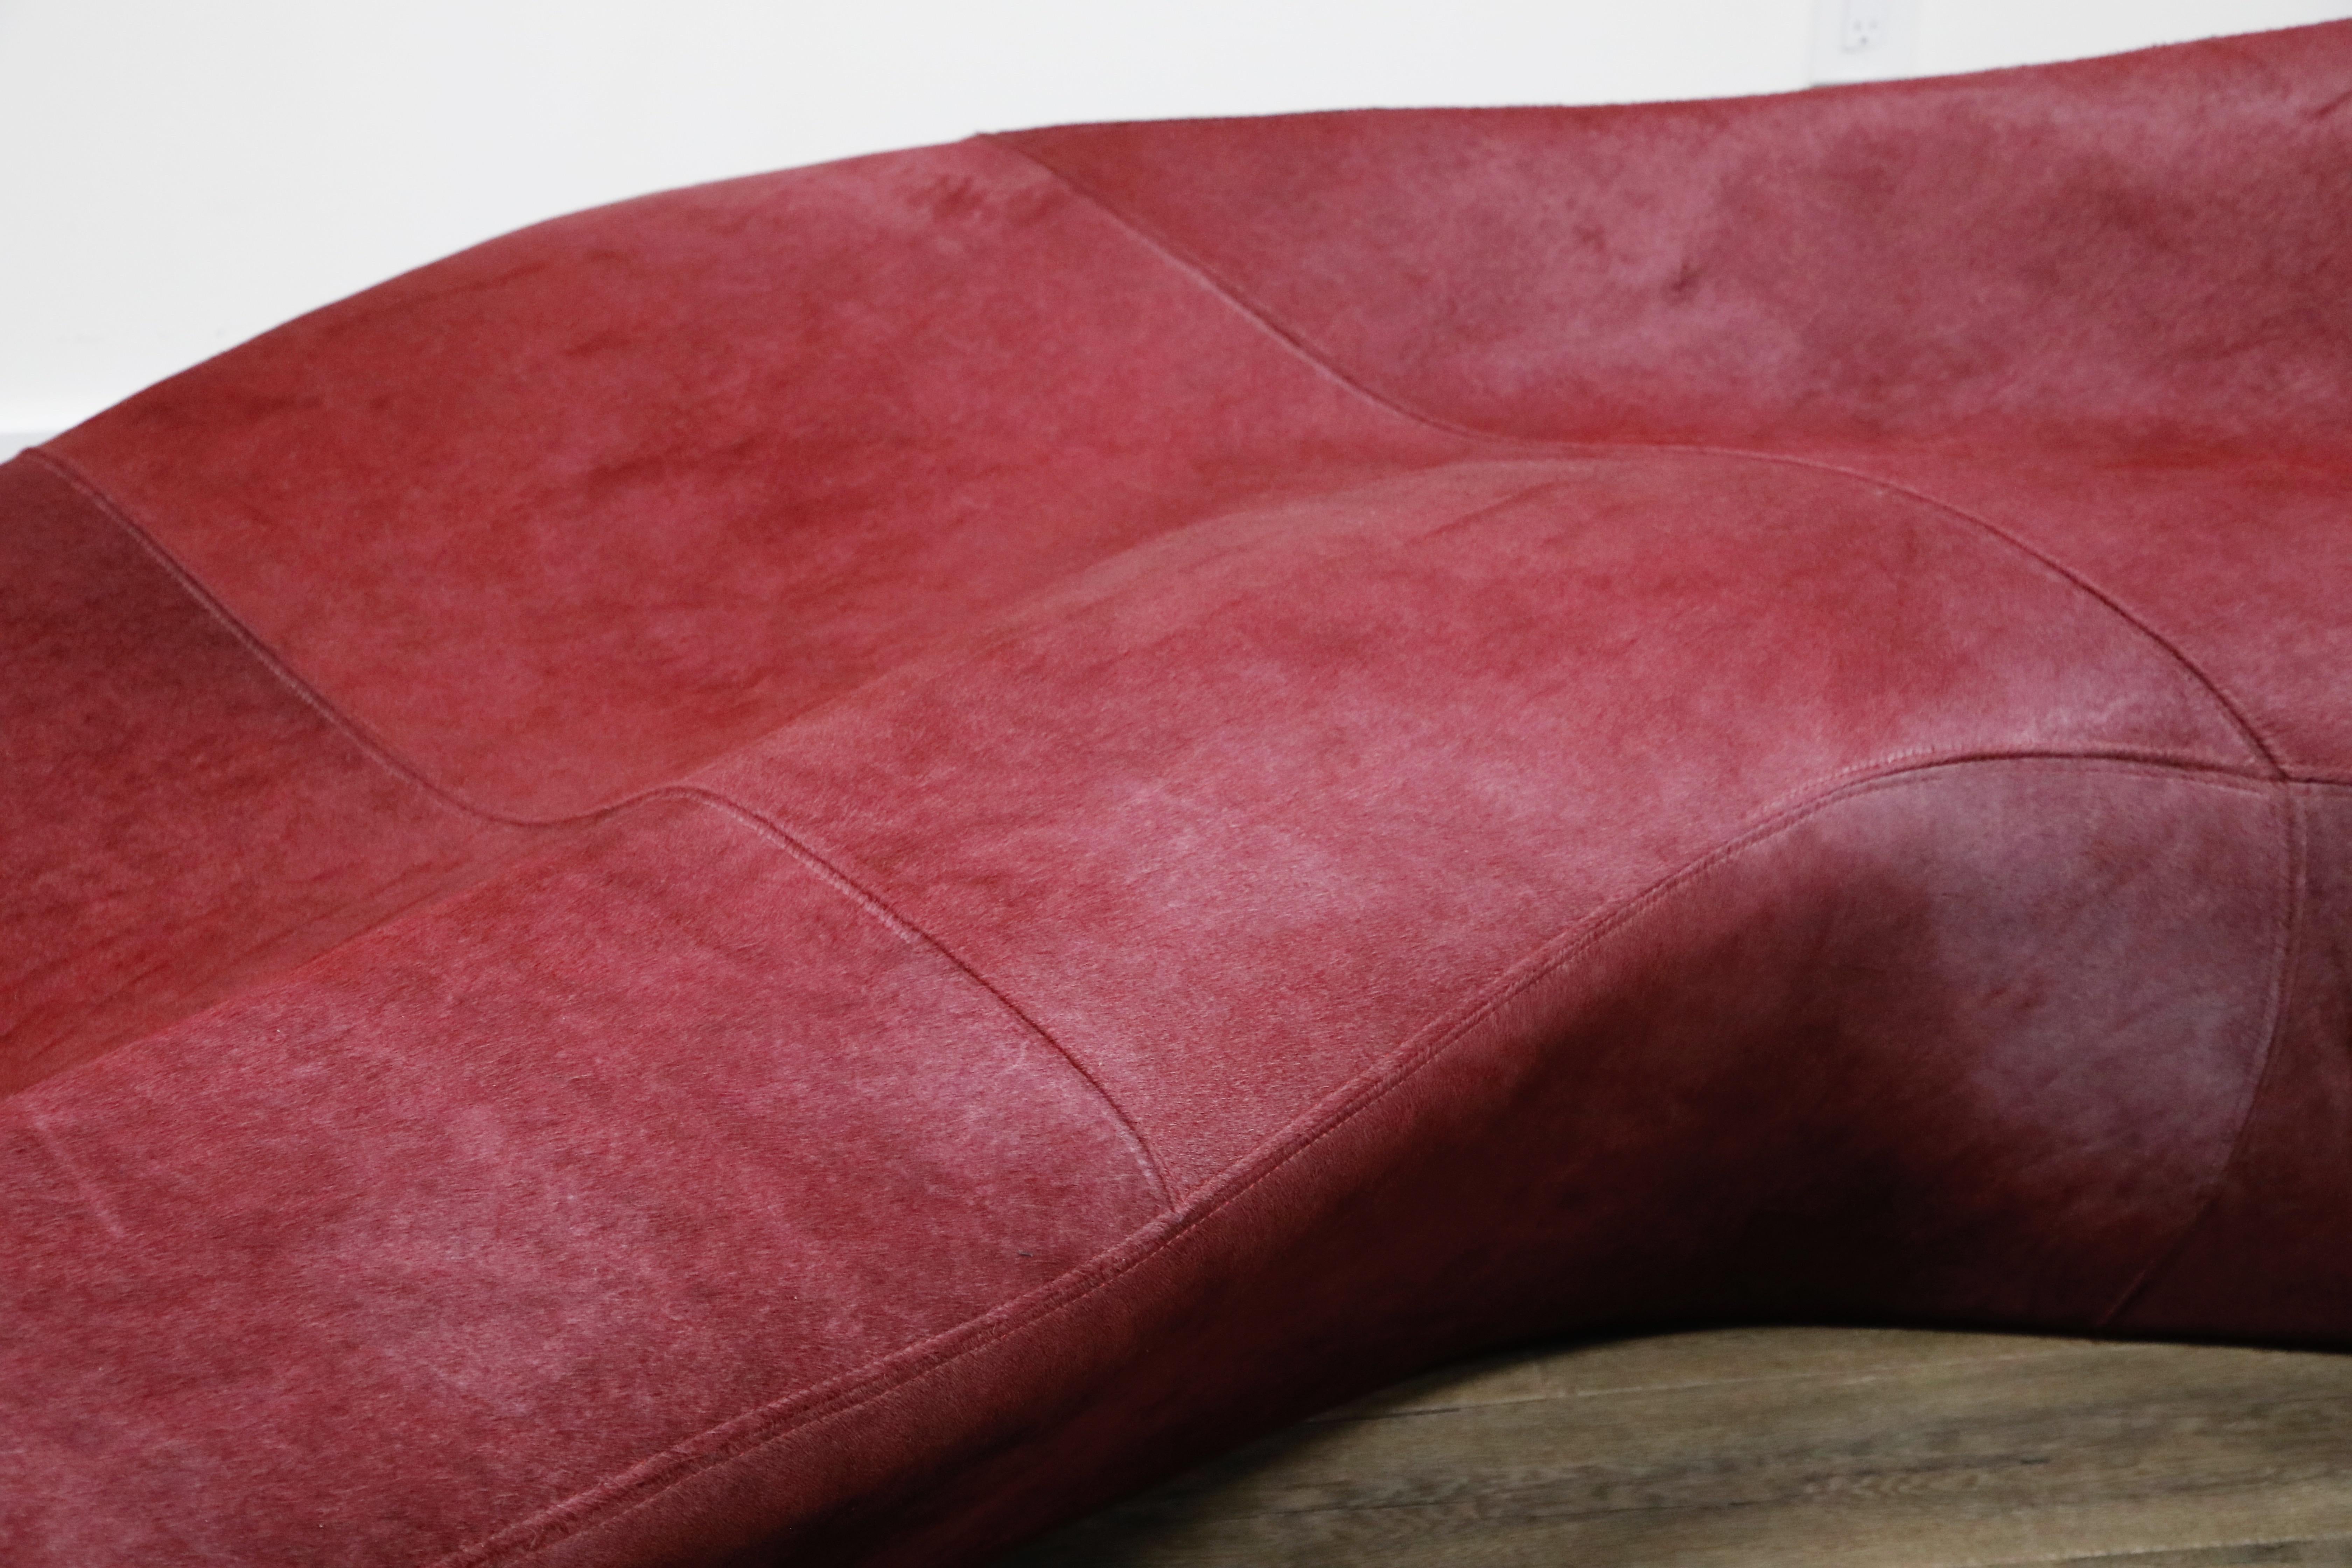 'Moraine' Biomorphic Sofa by Zaha Hadid for Sawaya & Moroni Italy, 2000, Signed 9